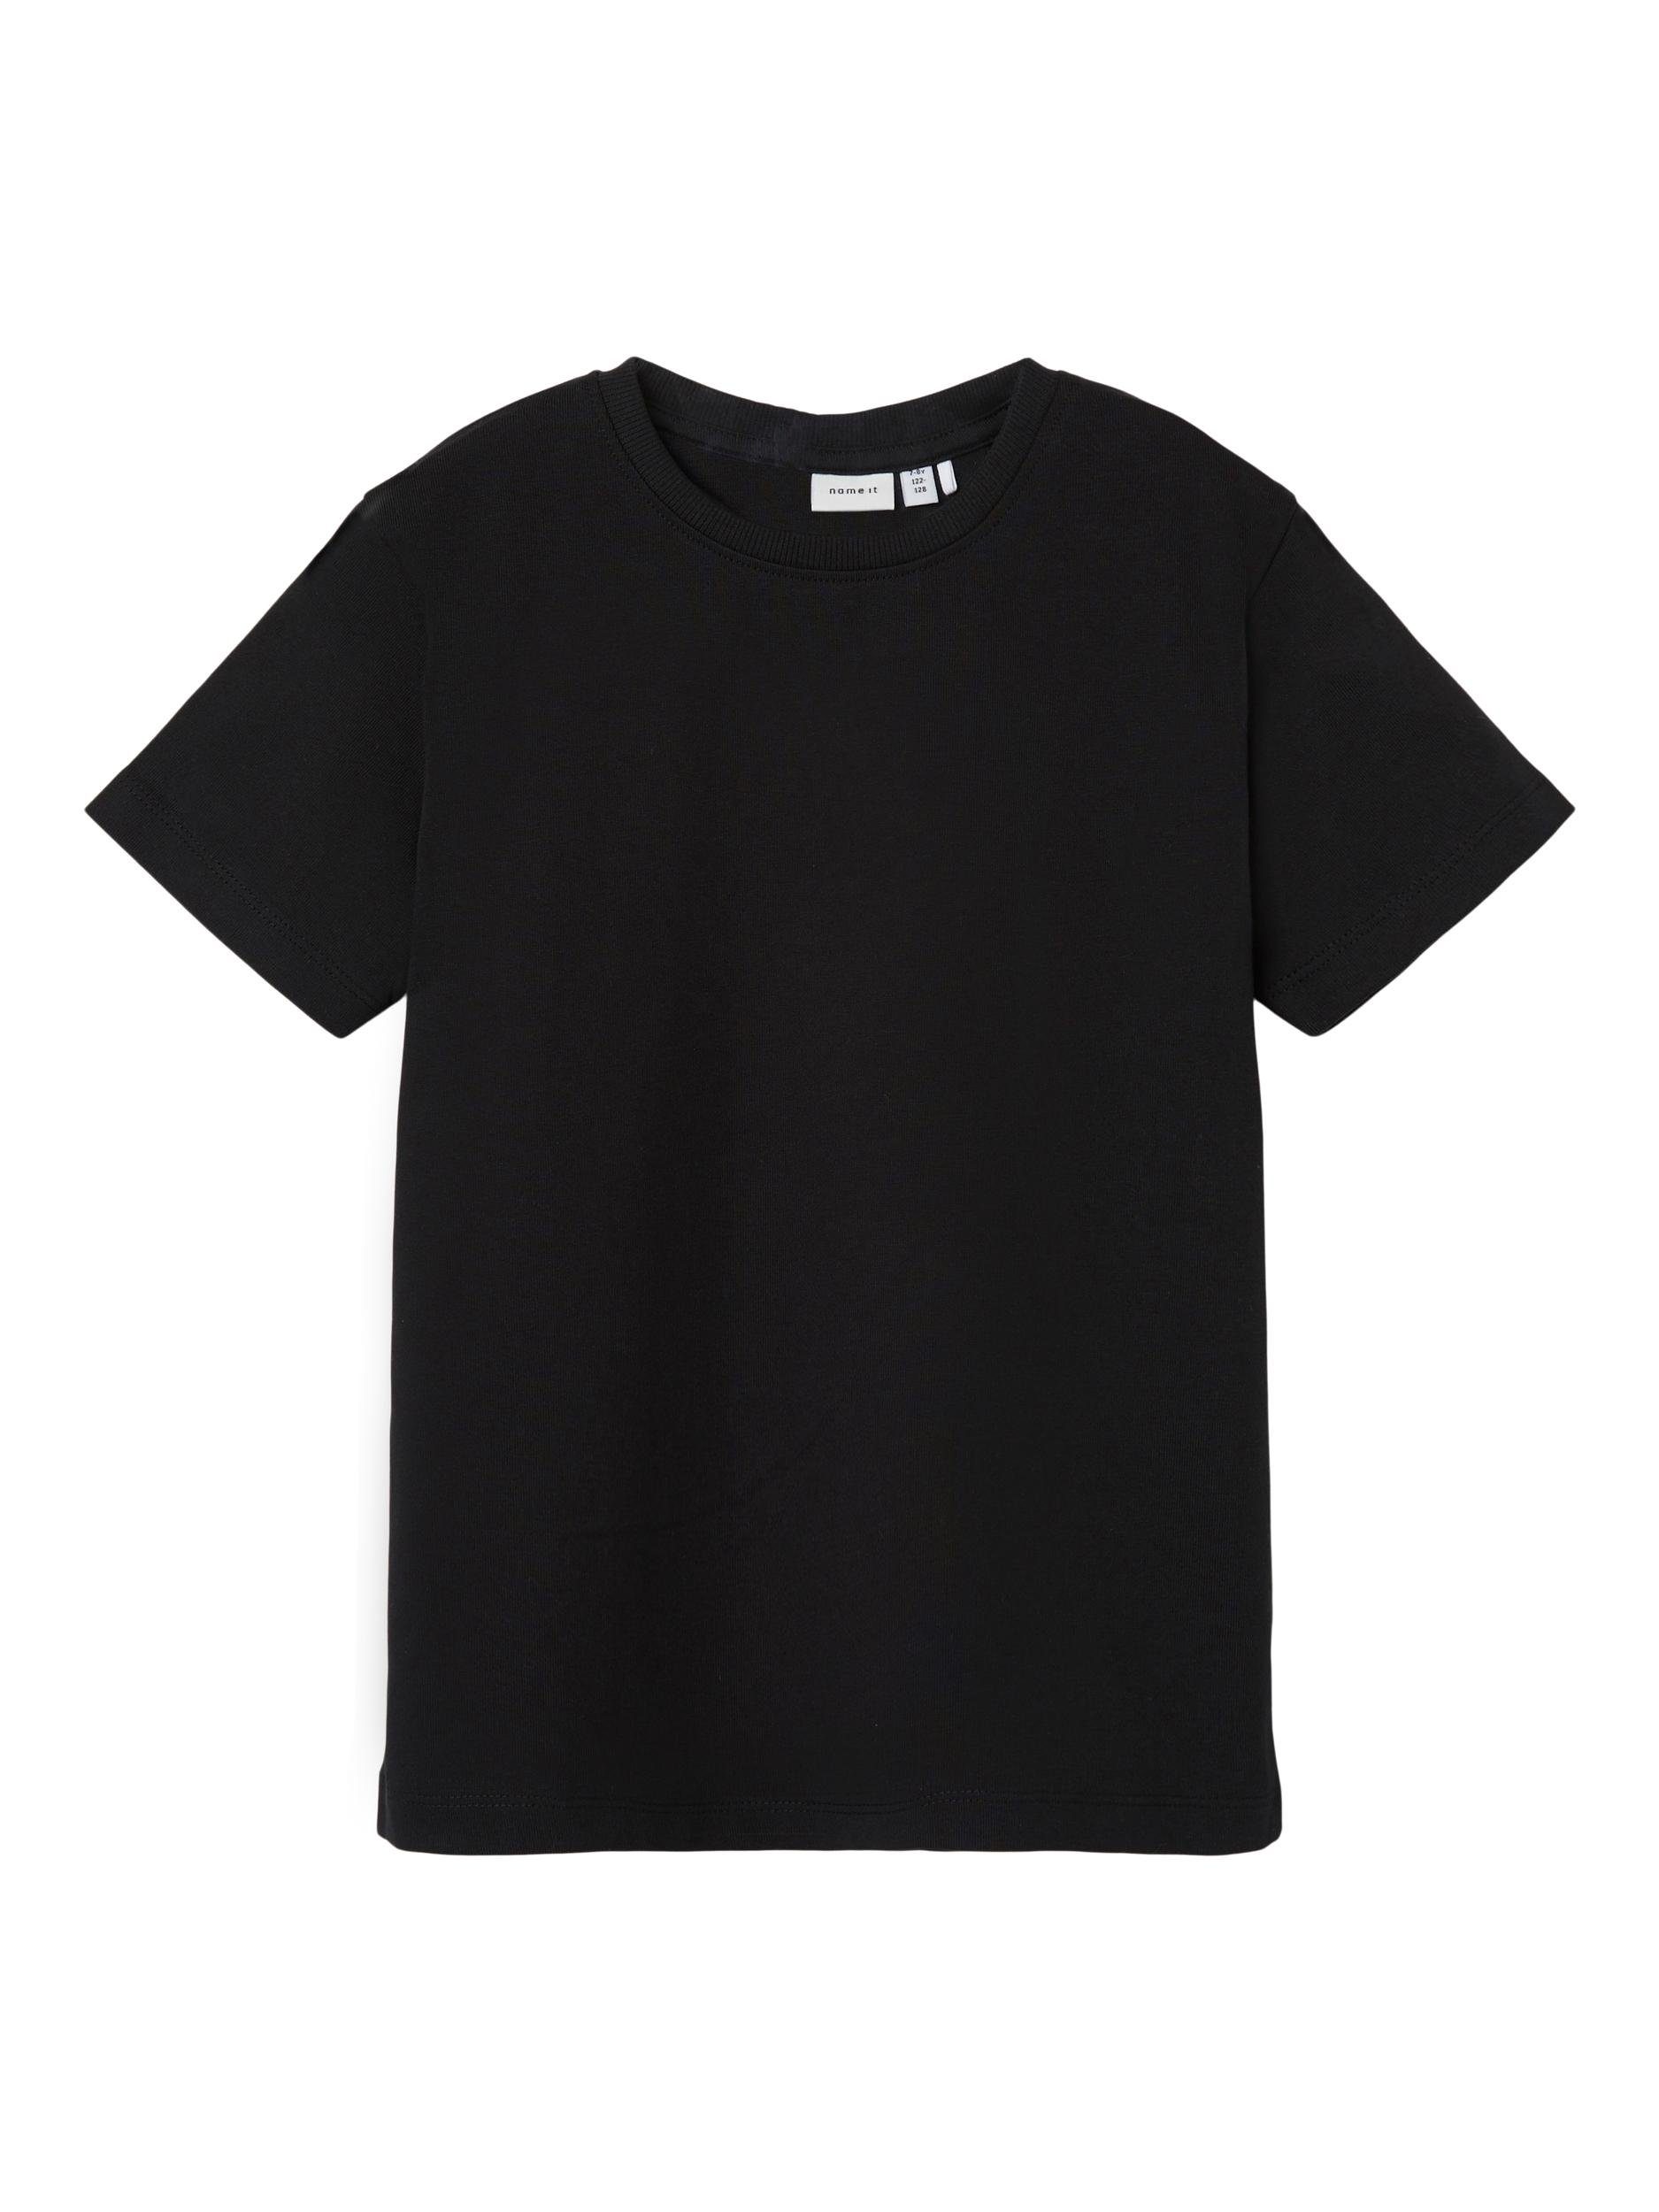 NKMTORSTEN LOOSE black TOP It T-Shirt Name S/S